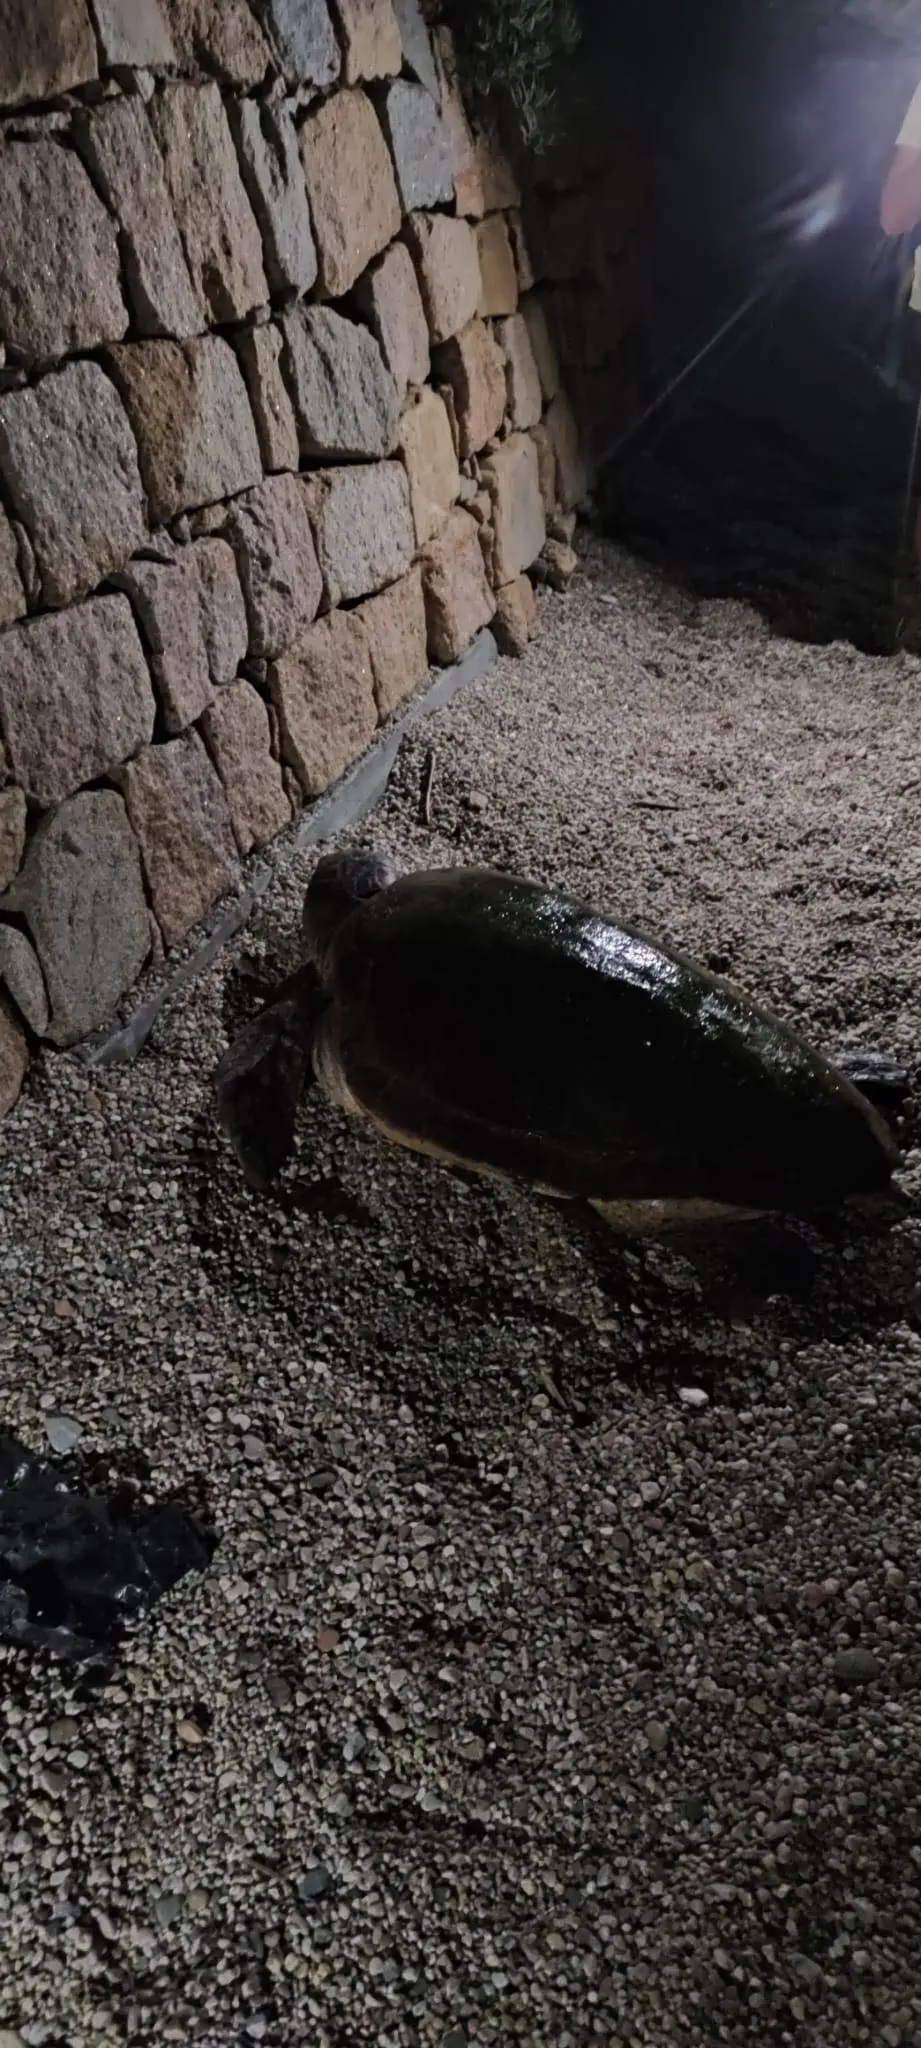 La tartaruga avvistata nella spiaggia di Santa Maria Navarrese, trovando il muro ritorna verso il mare